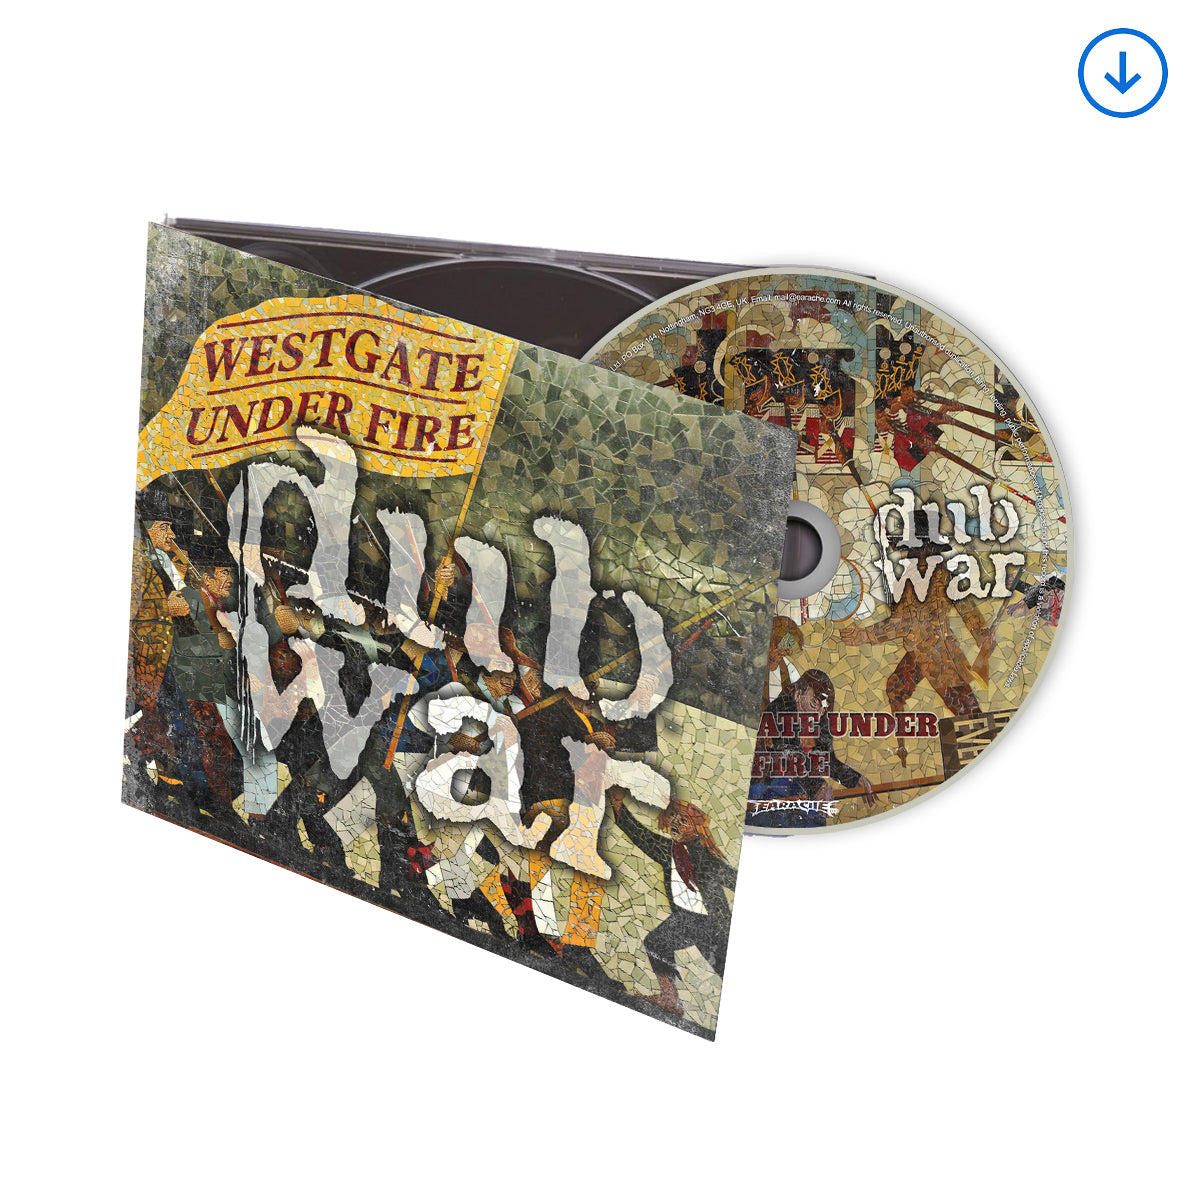 Dub War "Westgate Under Fire" CD